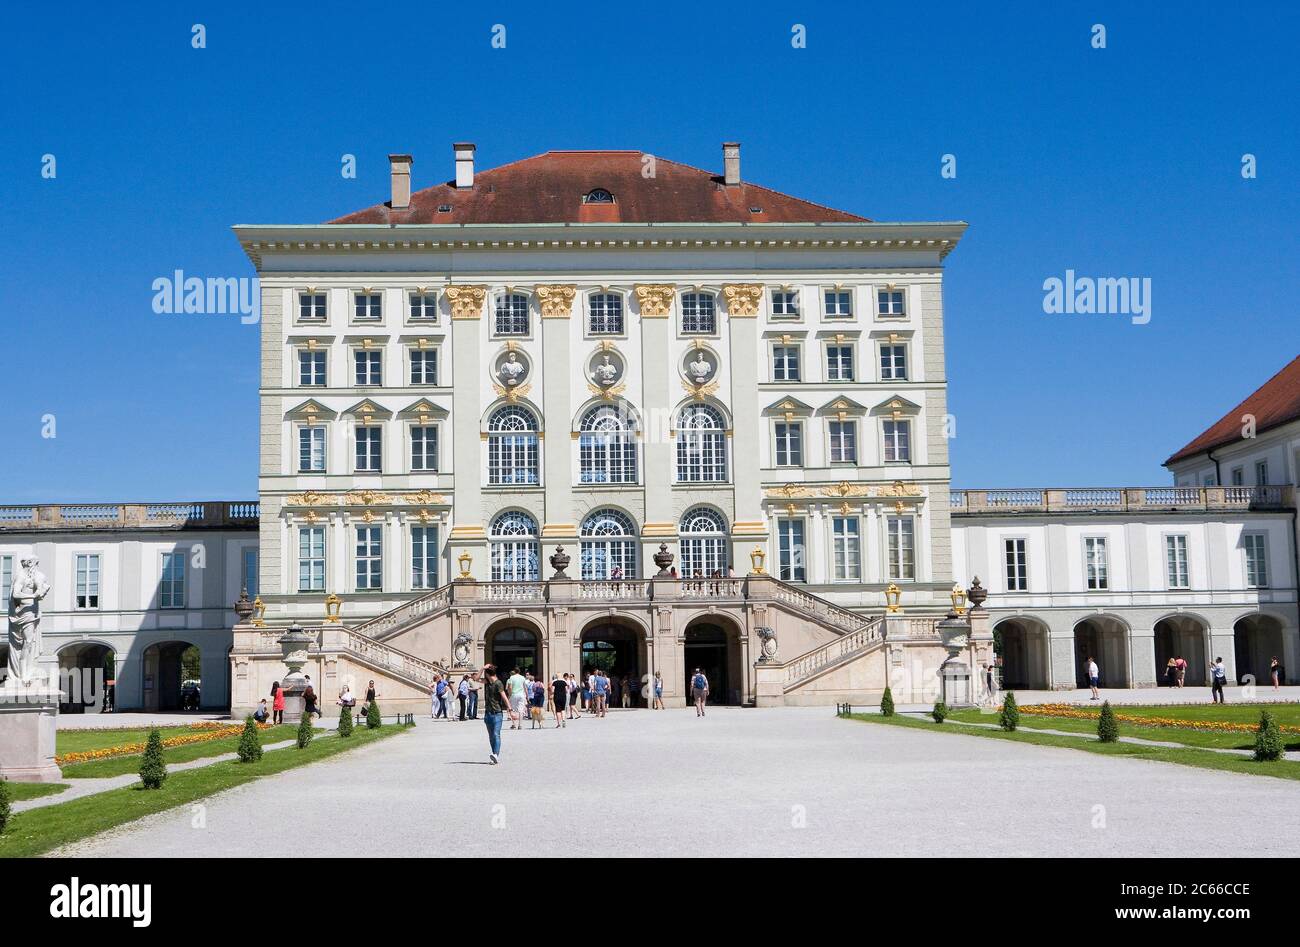 Munich, Palais Nymphenburg, début de la construction 1664 - 1675, inspiré du Palais piémontais de Venaria, vue du palais depuis le jardin formel français, l'un des grands palais royaux d'Europe Banque D'Images